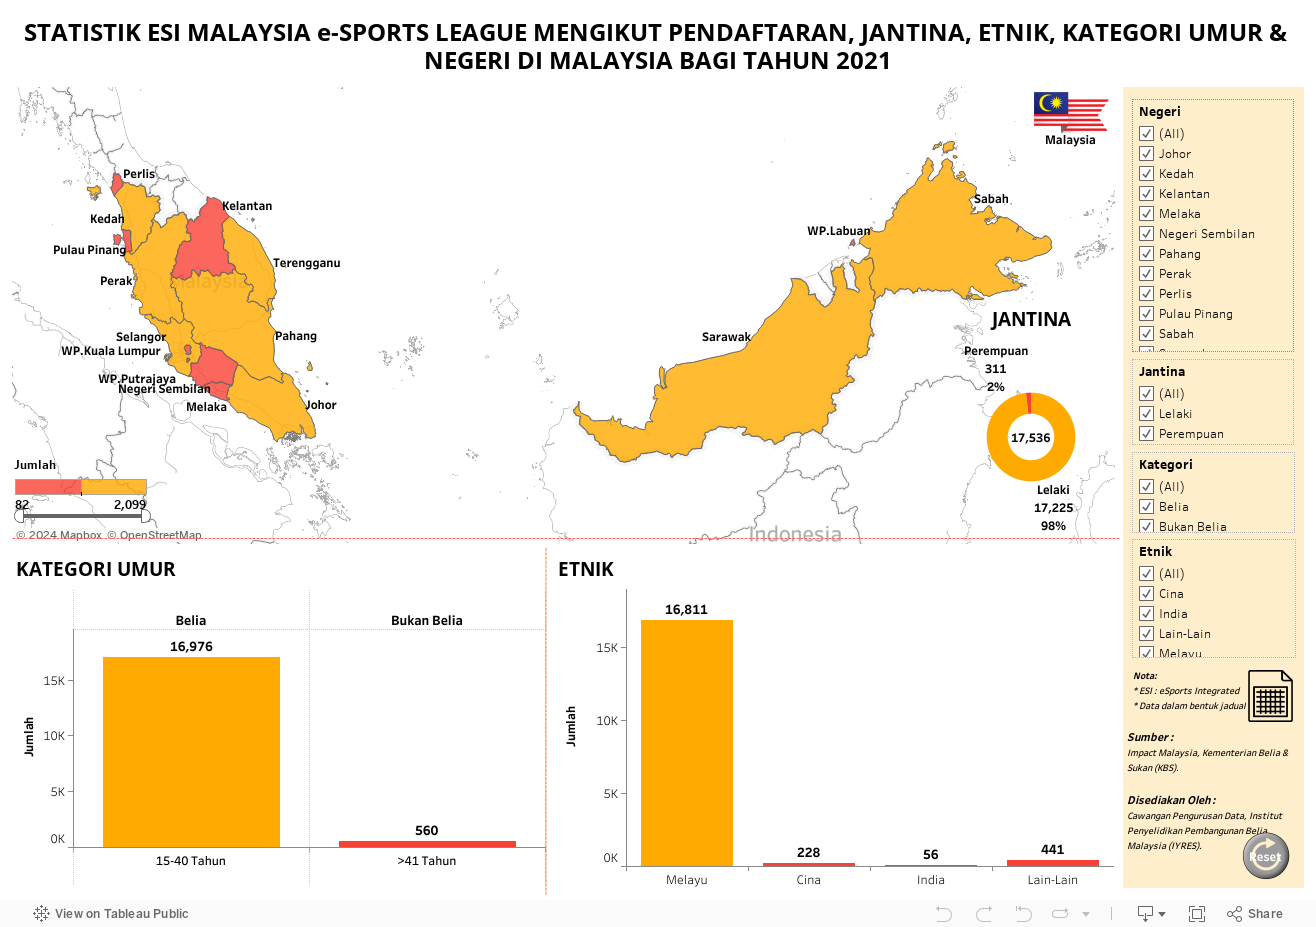 STATISTIK ESI MALAYSIA e-SPORTS LEAGUE MENGIKUT PENDAFTARAN, JANTINA, ETNIK, KATEGORI UMUR & NEGERI DI MALAYSIA BAGI TAHUN 2021 